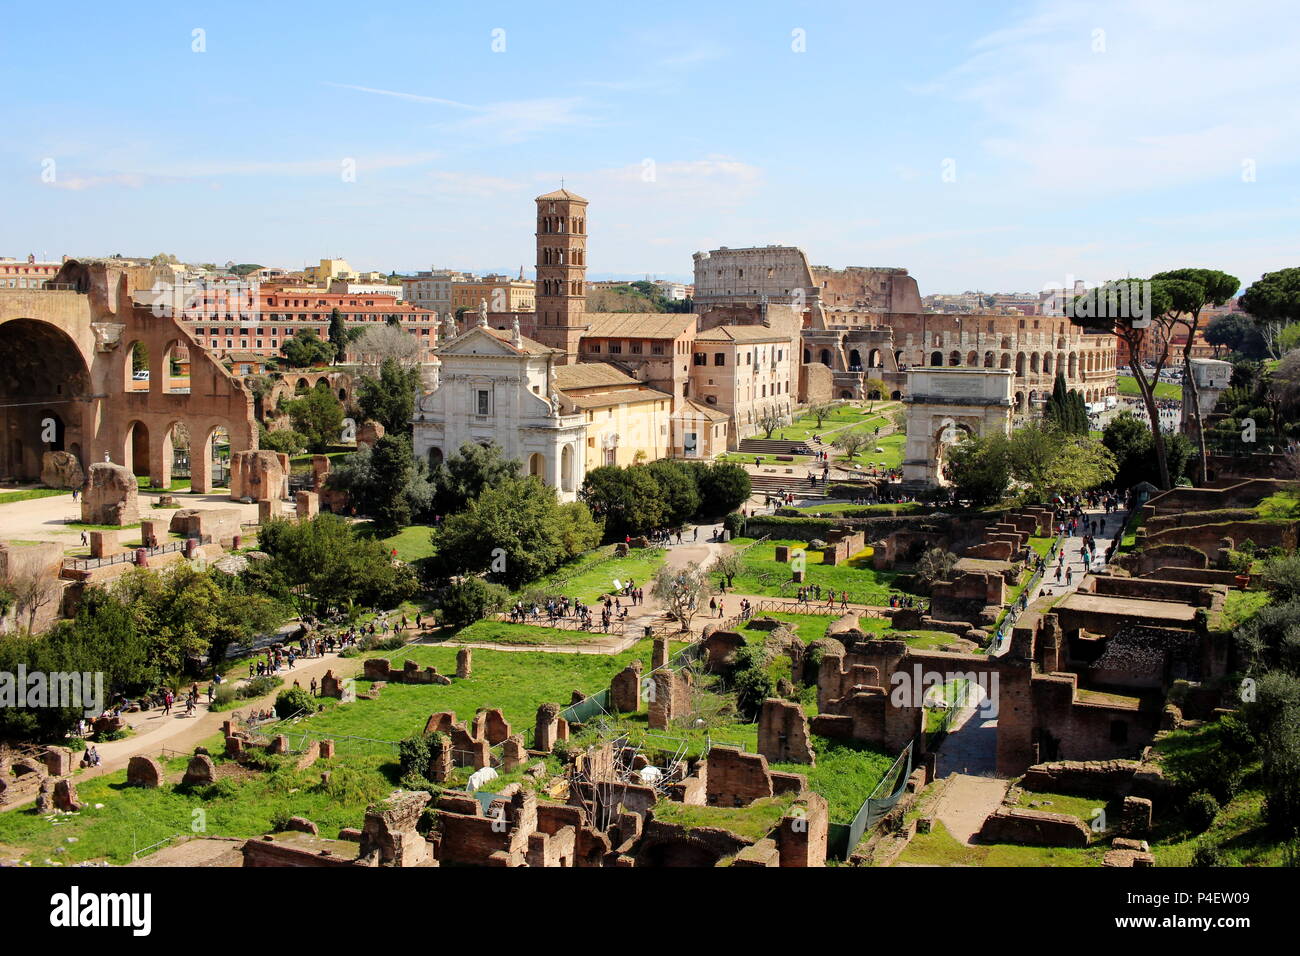 Sol de primavera en el Foro Romano - el corazón de la antigua Roma, con el Coliseo al fondo Foto de stock